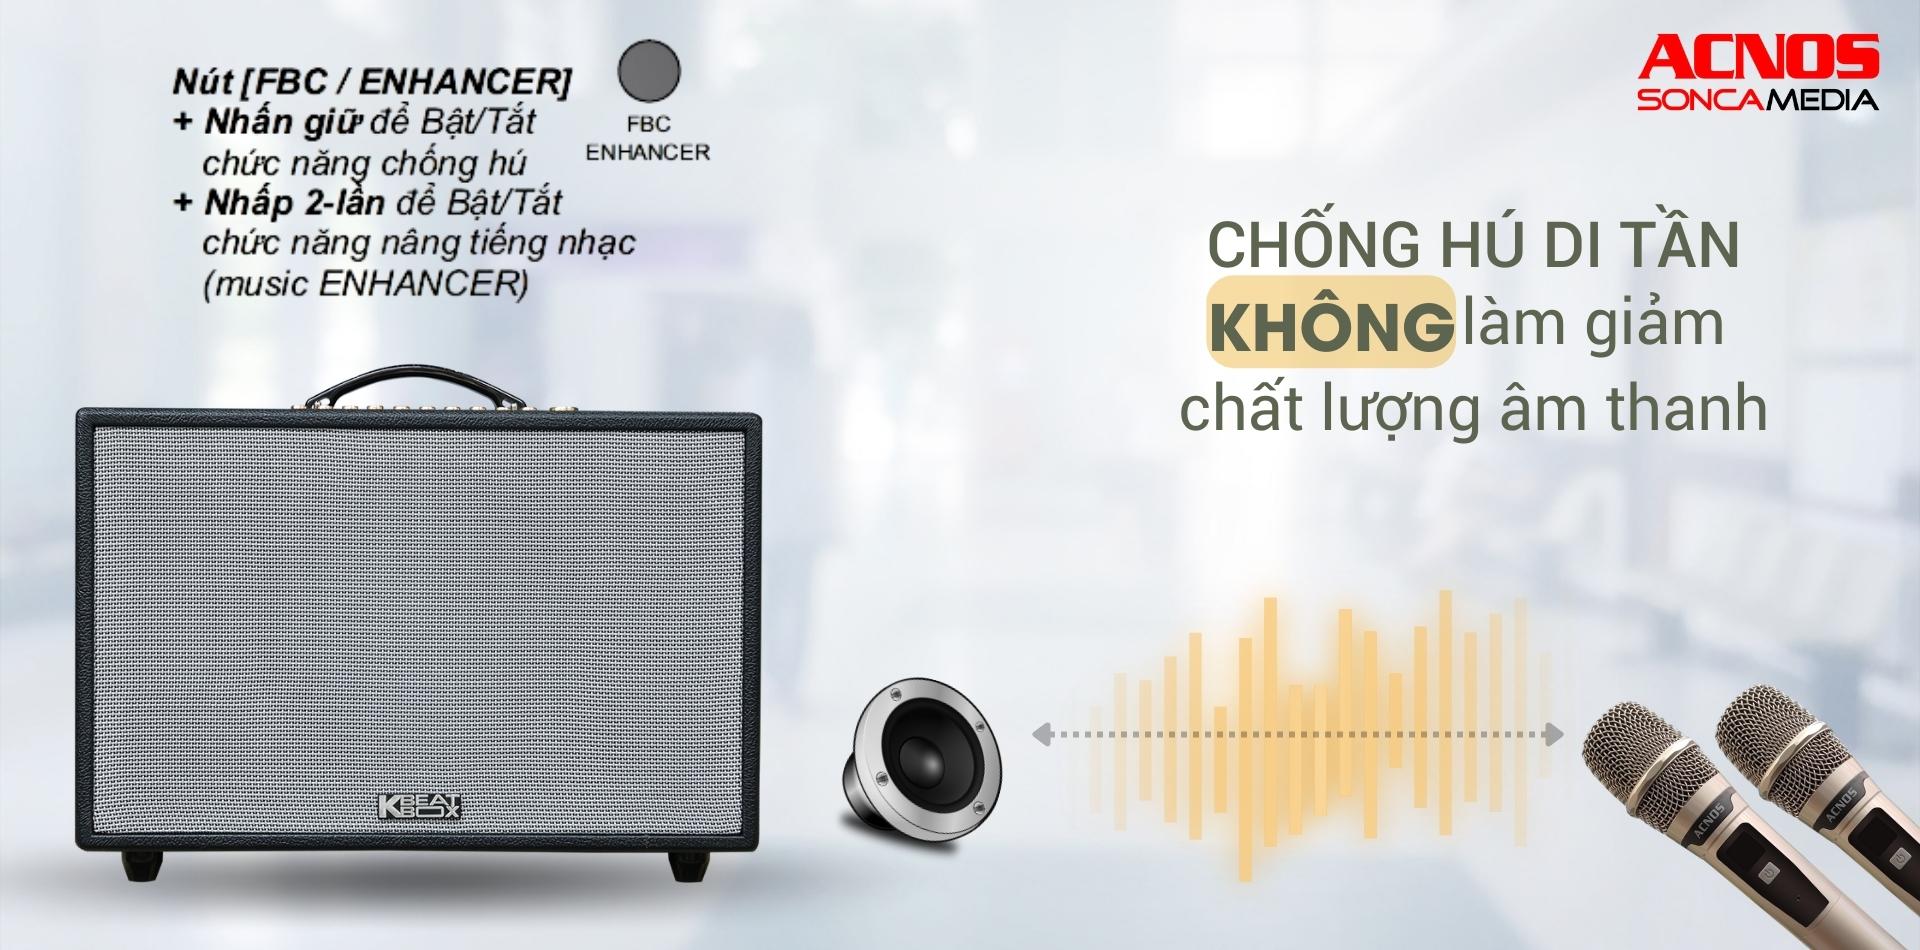 cs3600-acnos-loa-karaoke-di-dong-bluetooth-chong-hu-di-tan